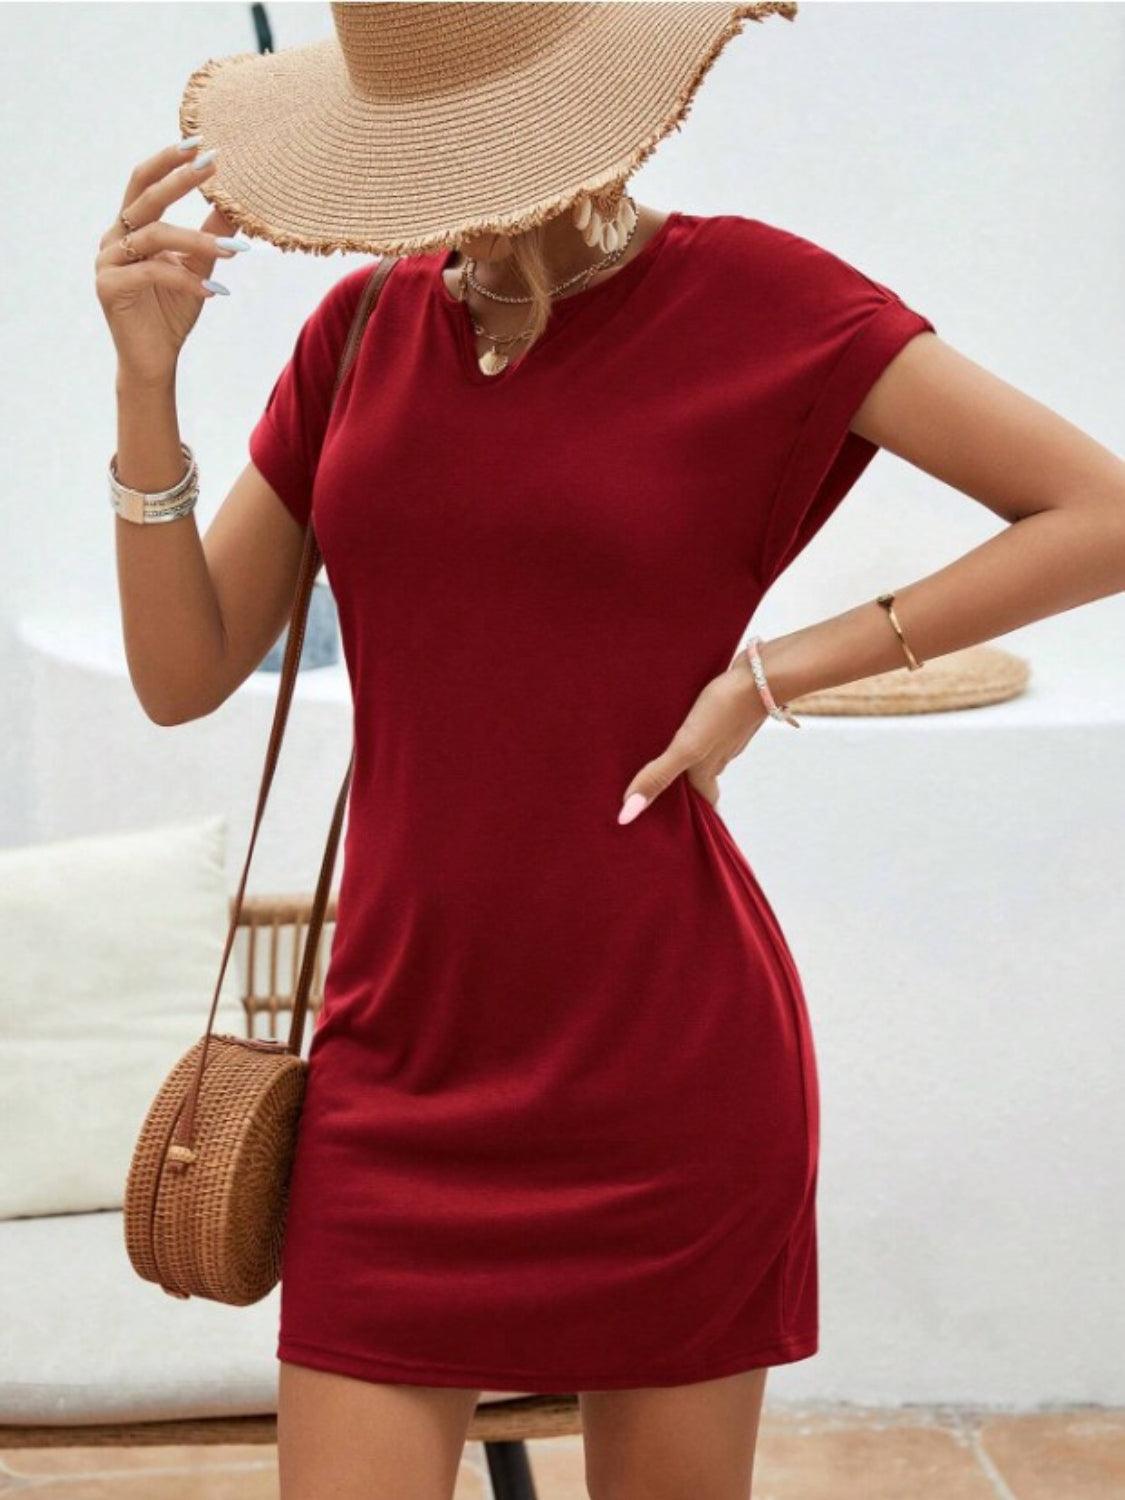 Bona Fide Fashion - Notched Short Sleeve Mini Tee Dress - Women Fashion - Bona Fide Fashion